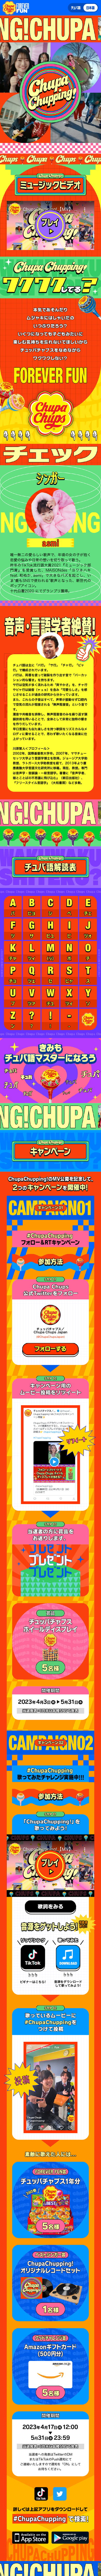 Chupa Chups_sp_1